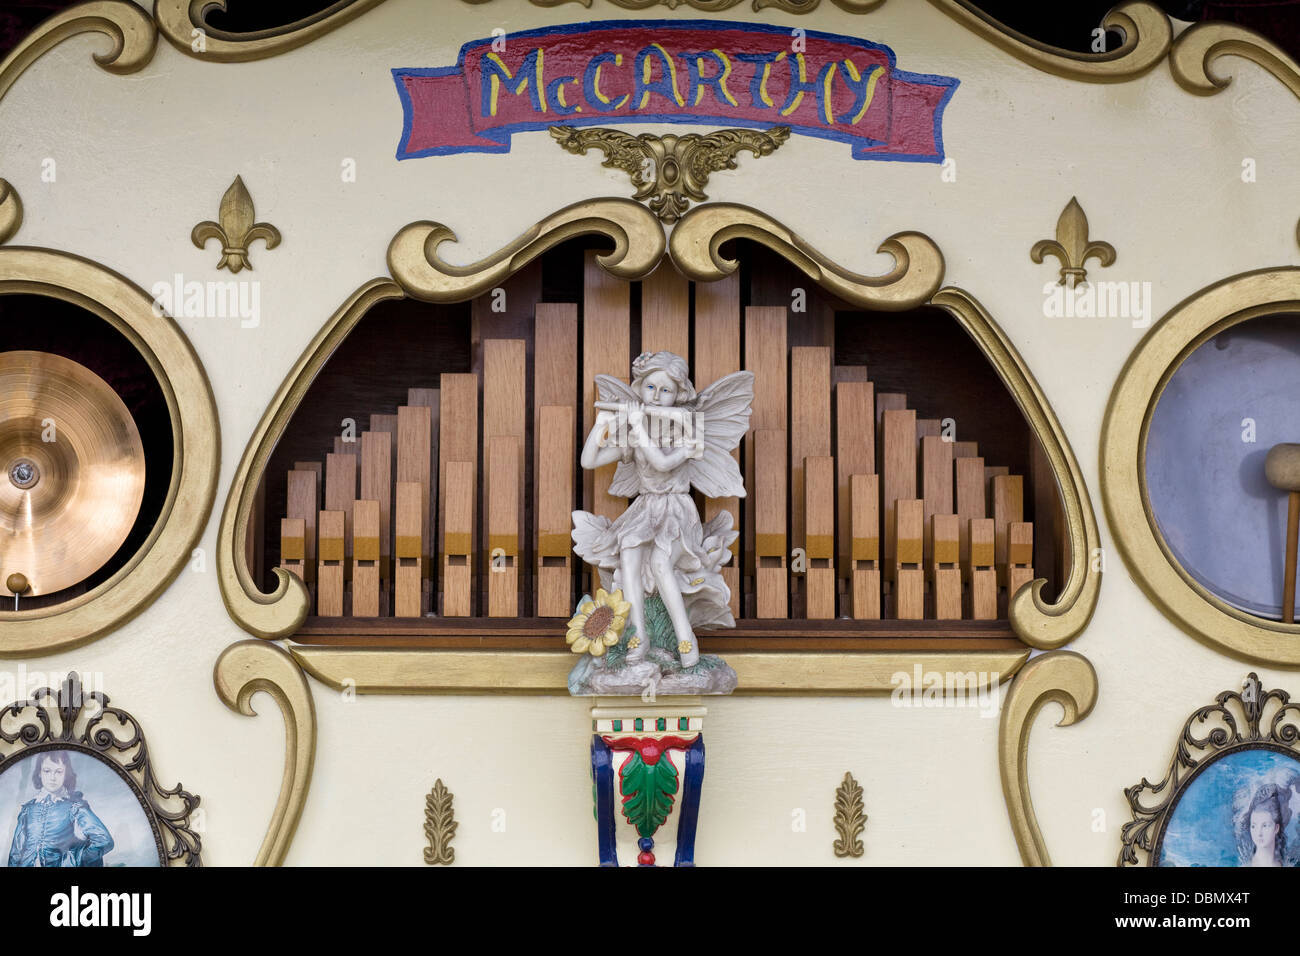 Victorian fairground organ at a steam fair in England Stock Photo